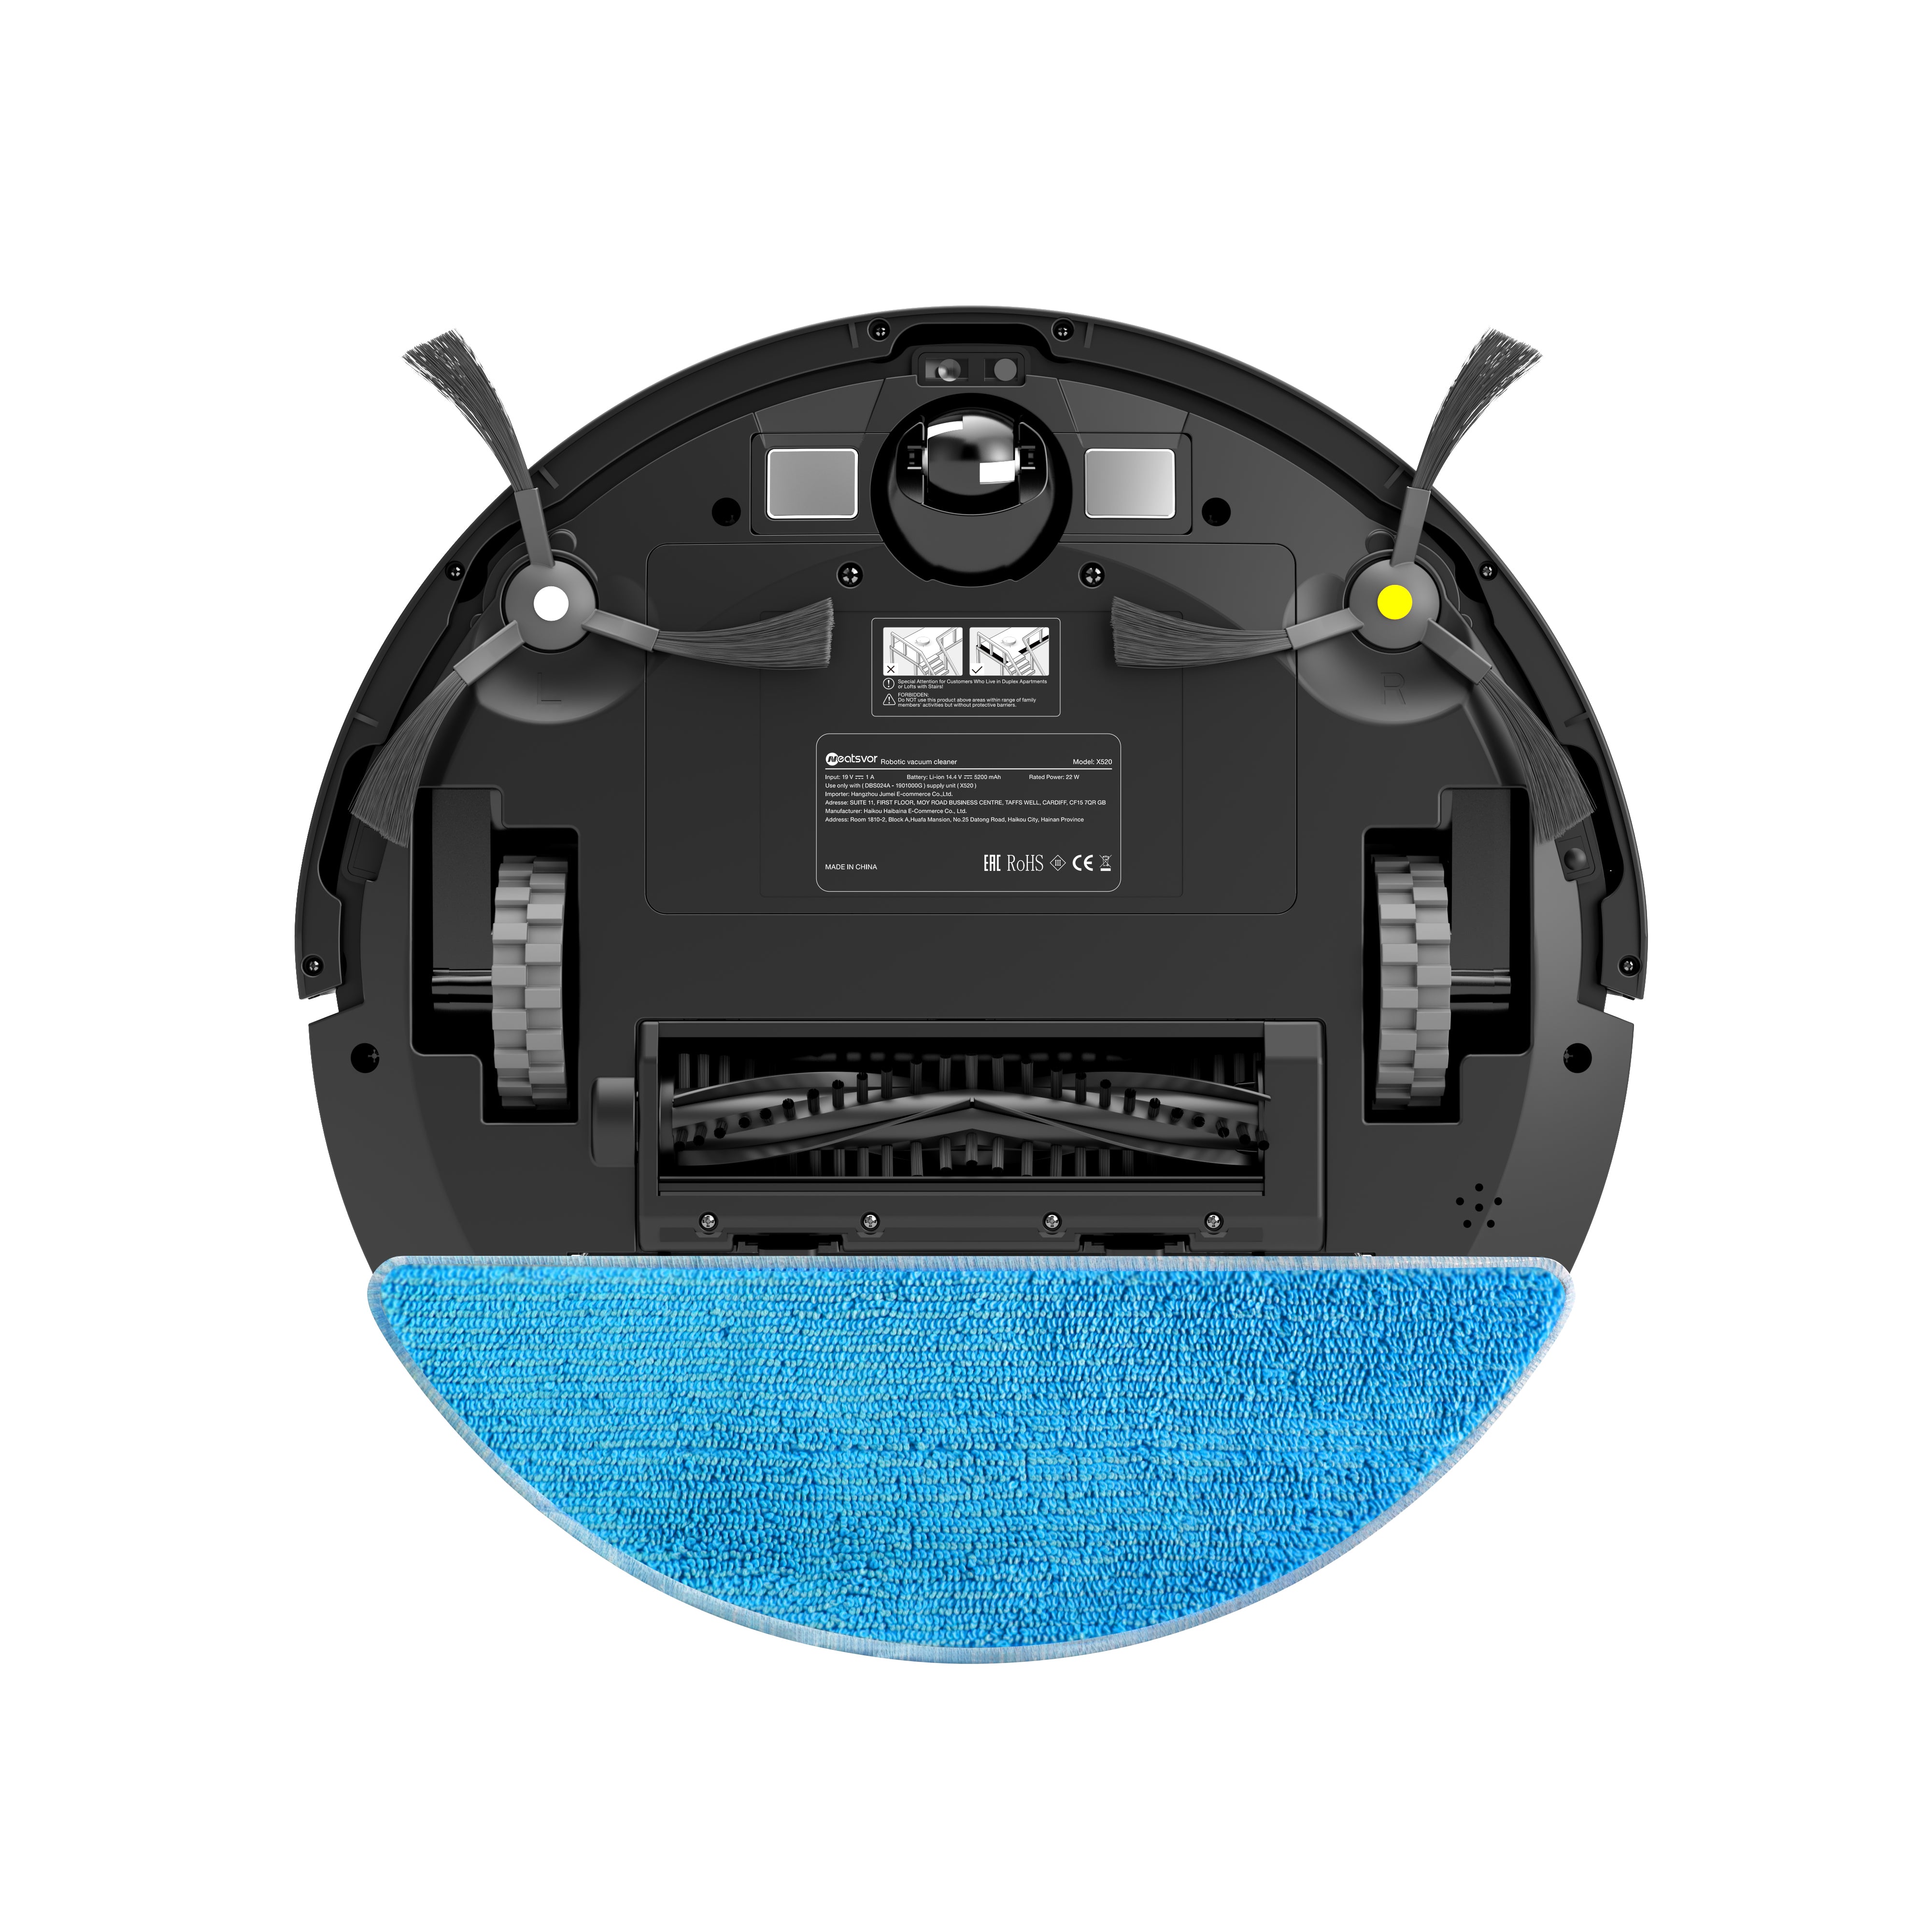 Neatsvor X520 Robot Vacuum Cleaner